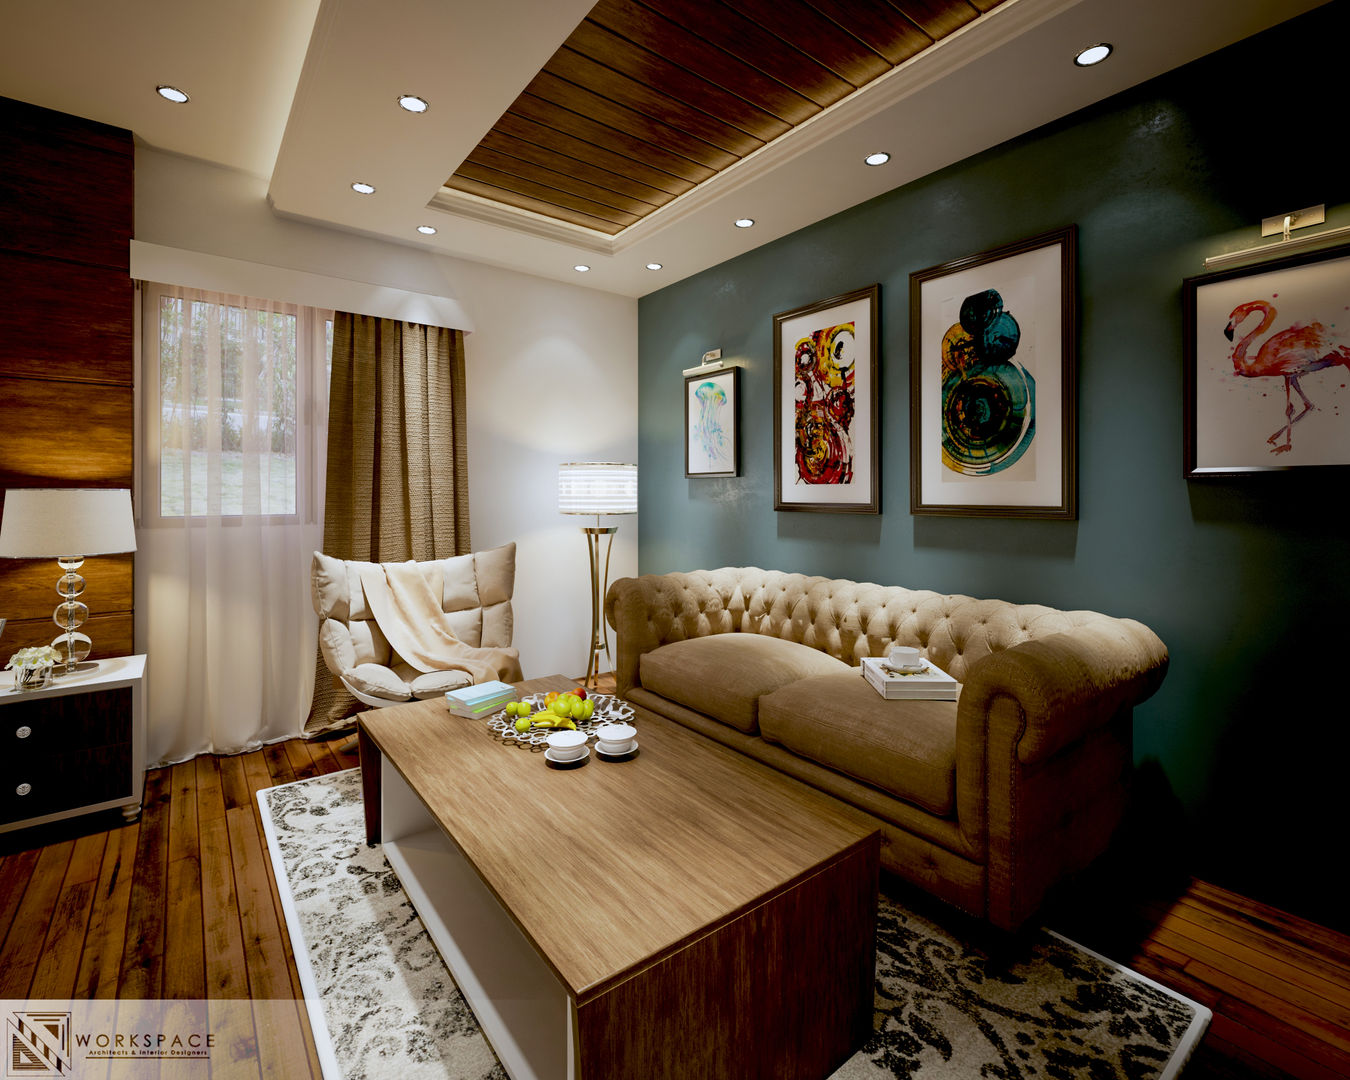 Royal suite | Bedroom, WORKSPACE architects & interior designers WORKSPACE architects & interior designers Dormitorios de estilo moderno